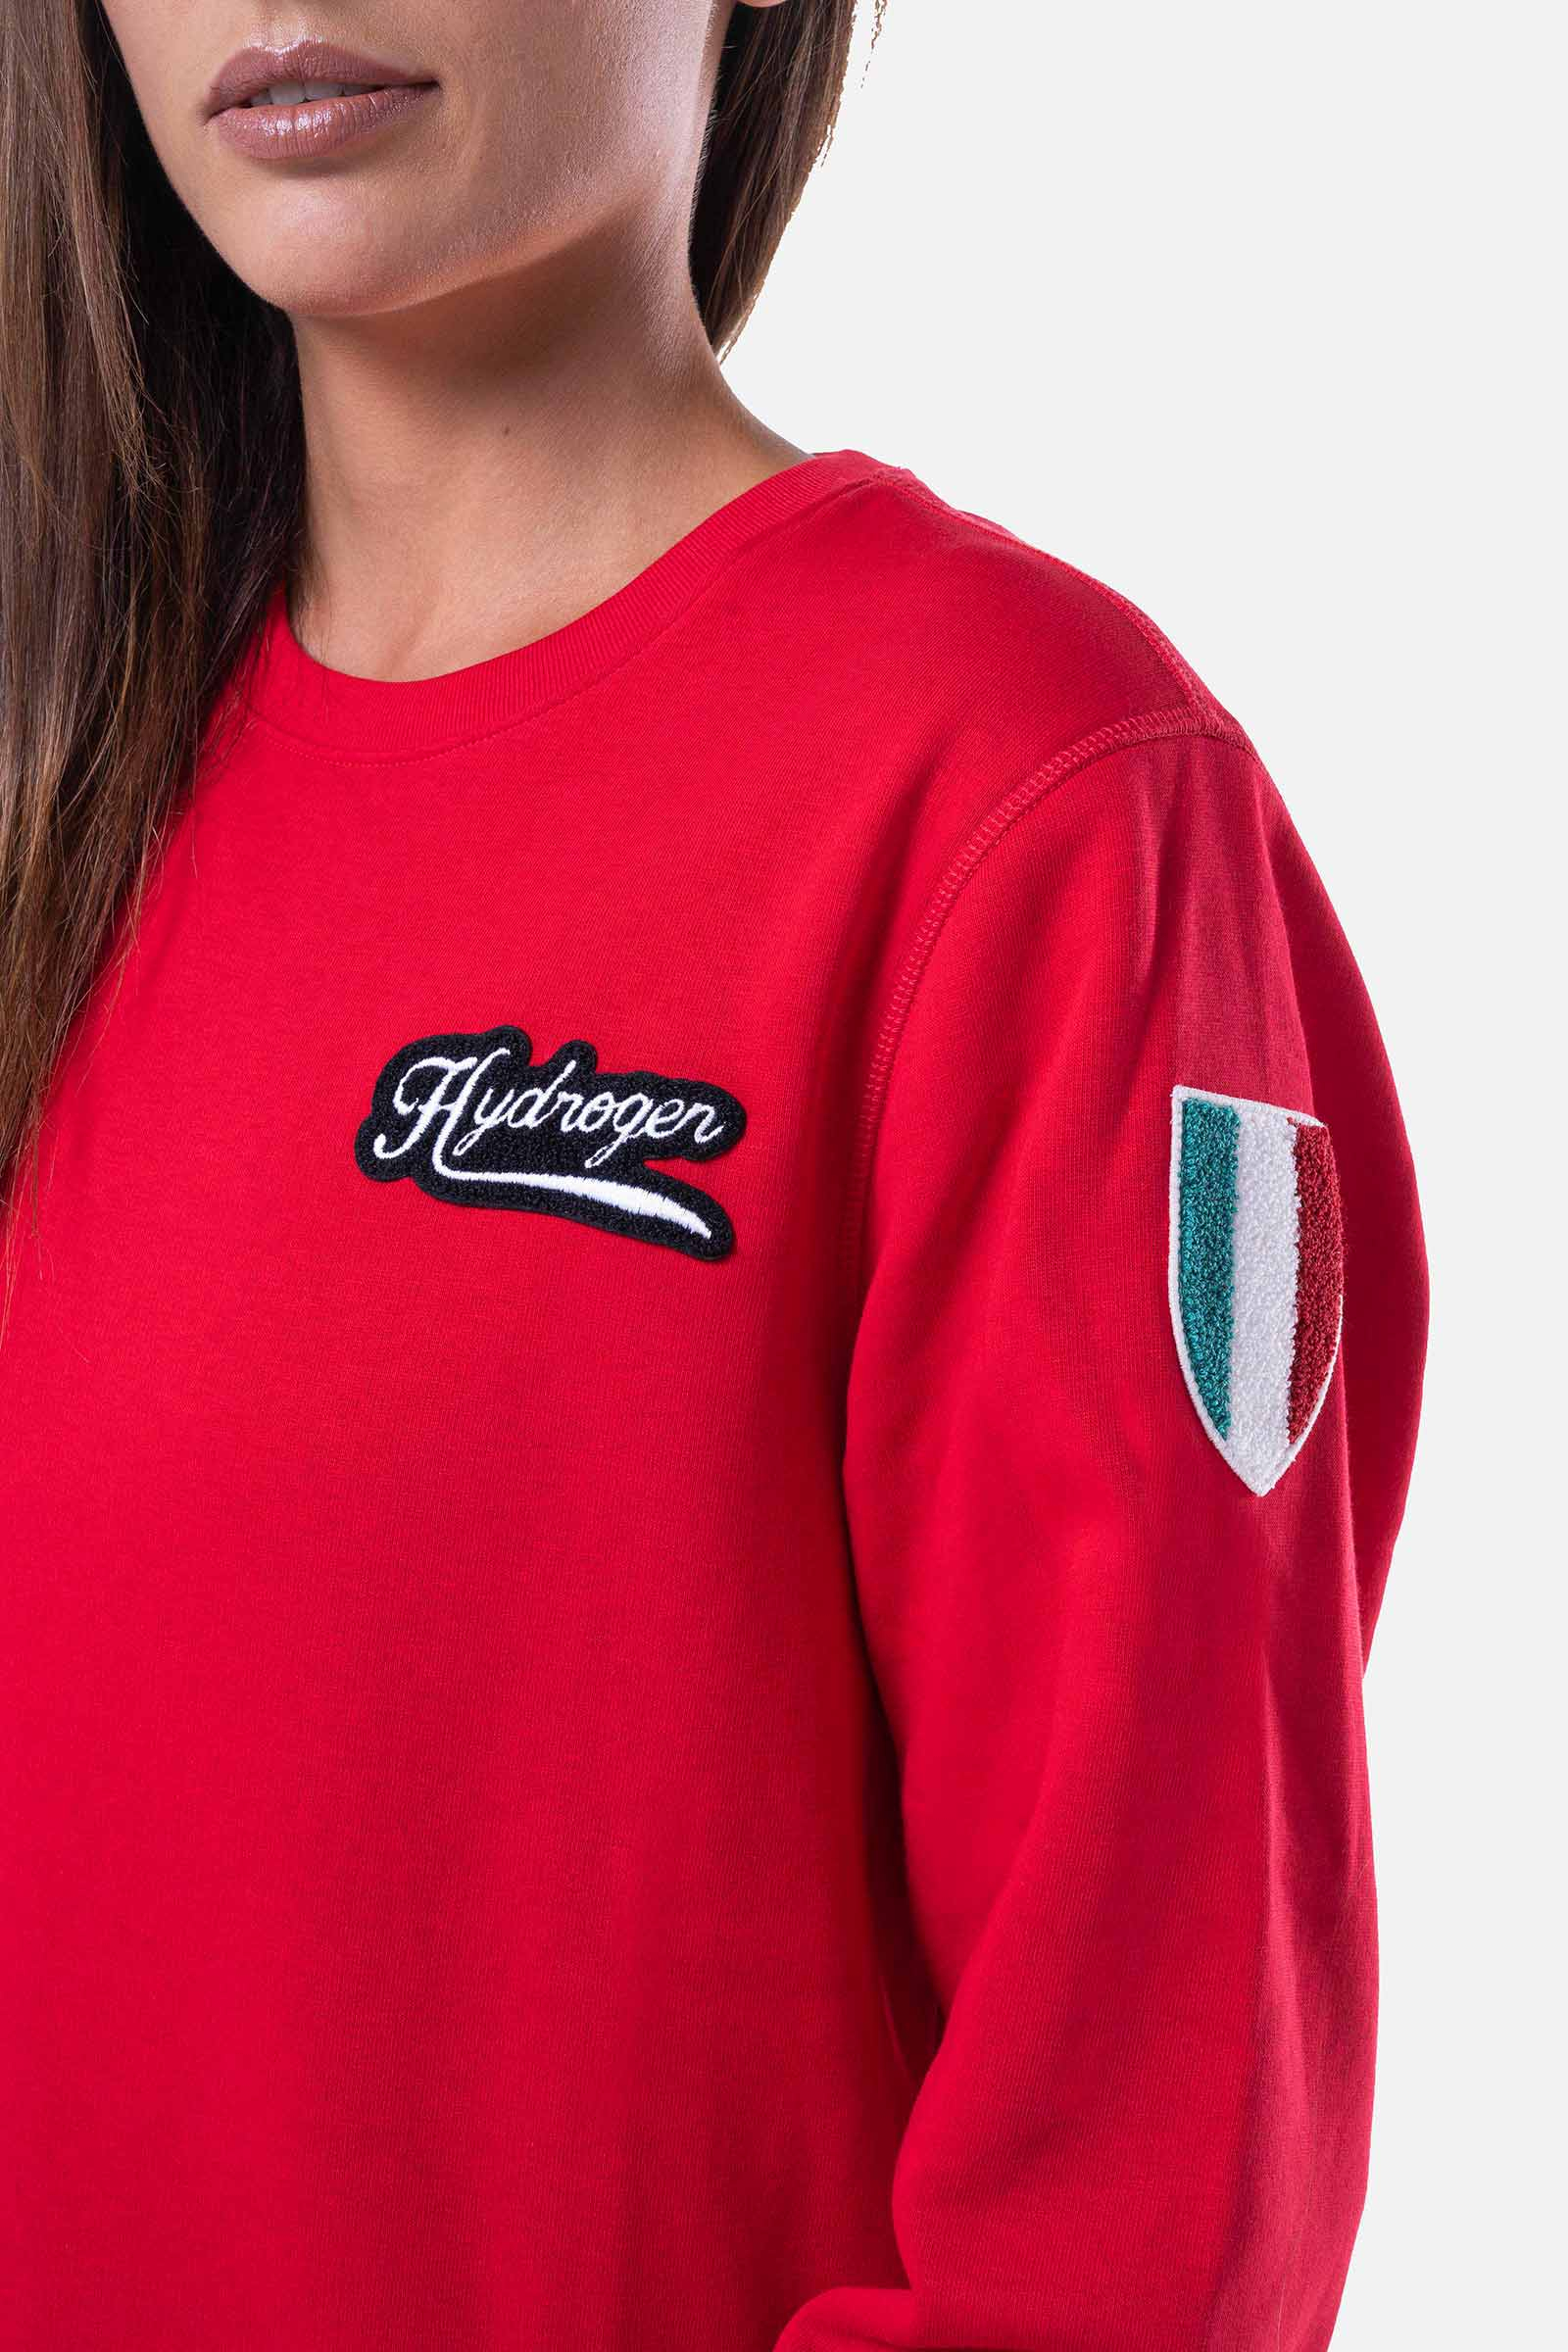 ITALIA 17 SWEATSHIRT - RED - Hydrogen - Luxury Sportwear